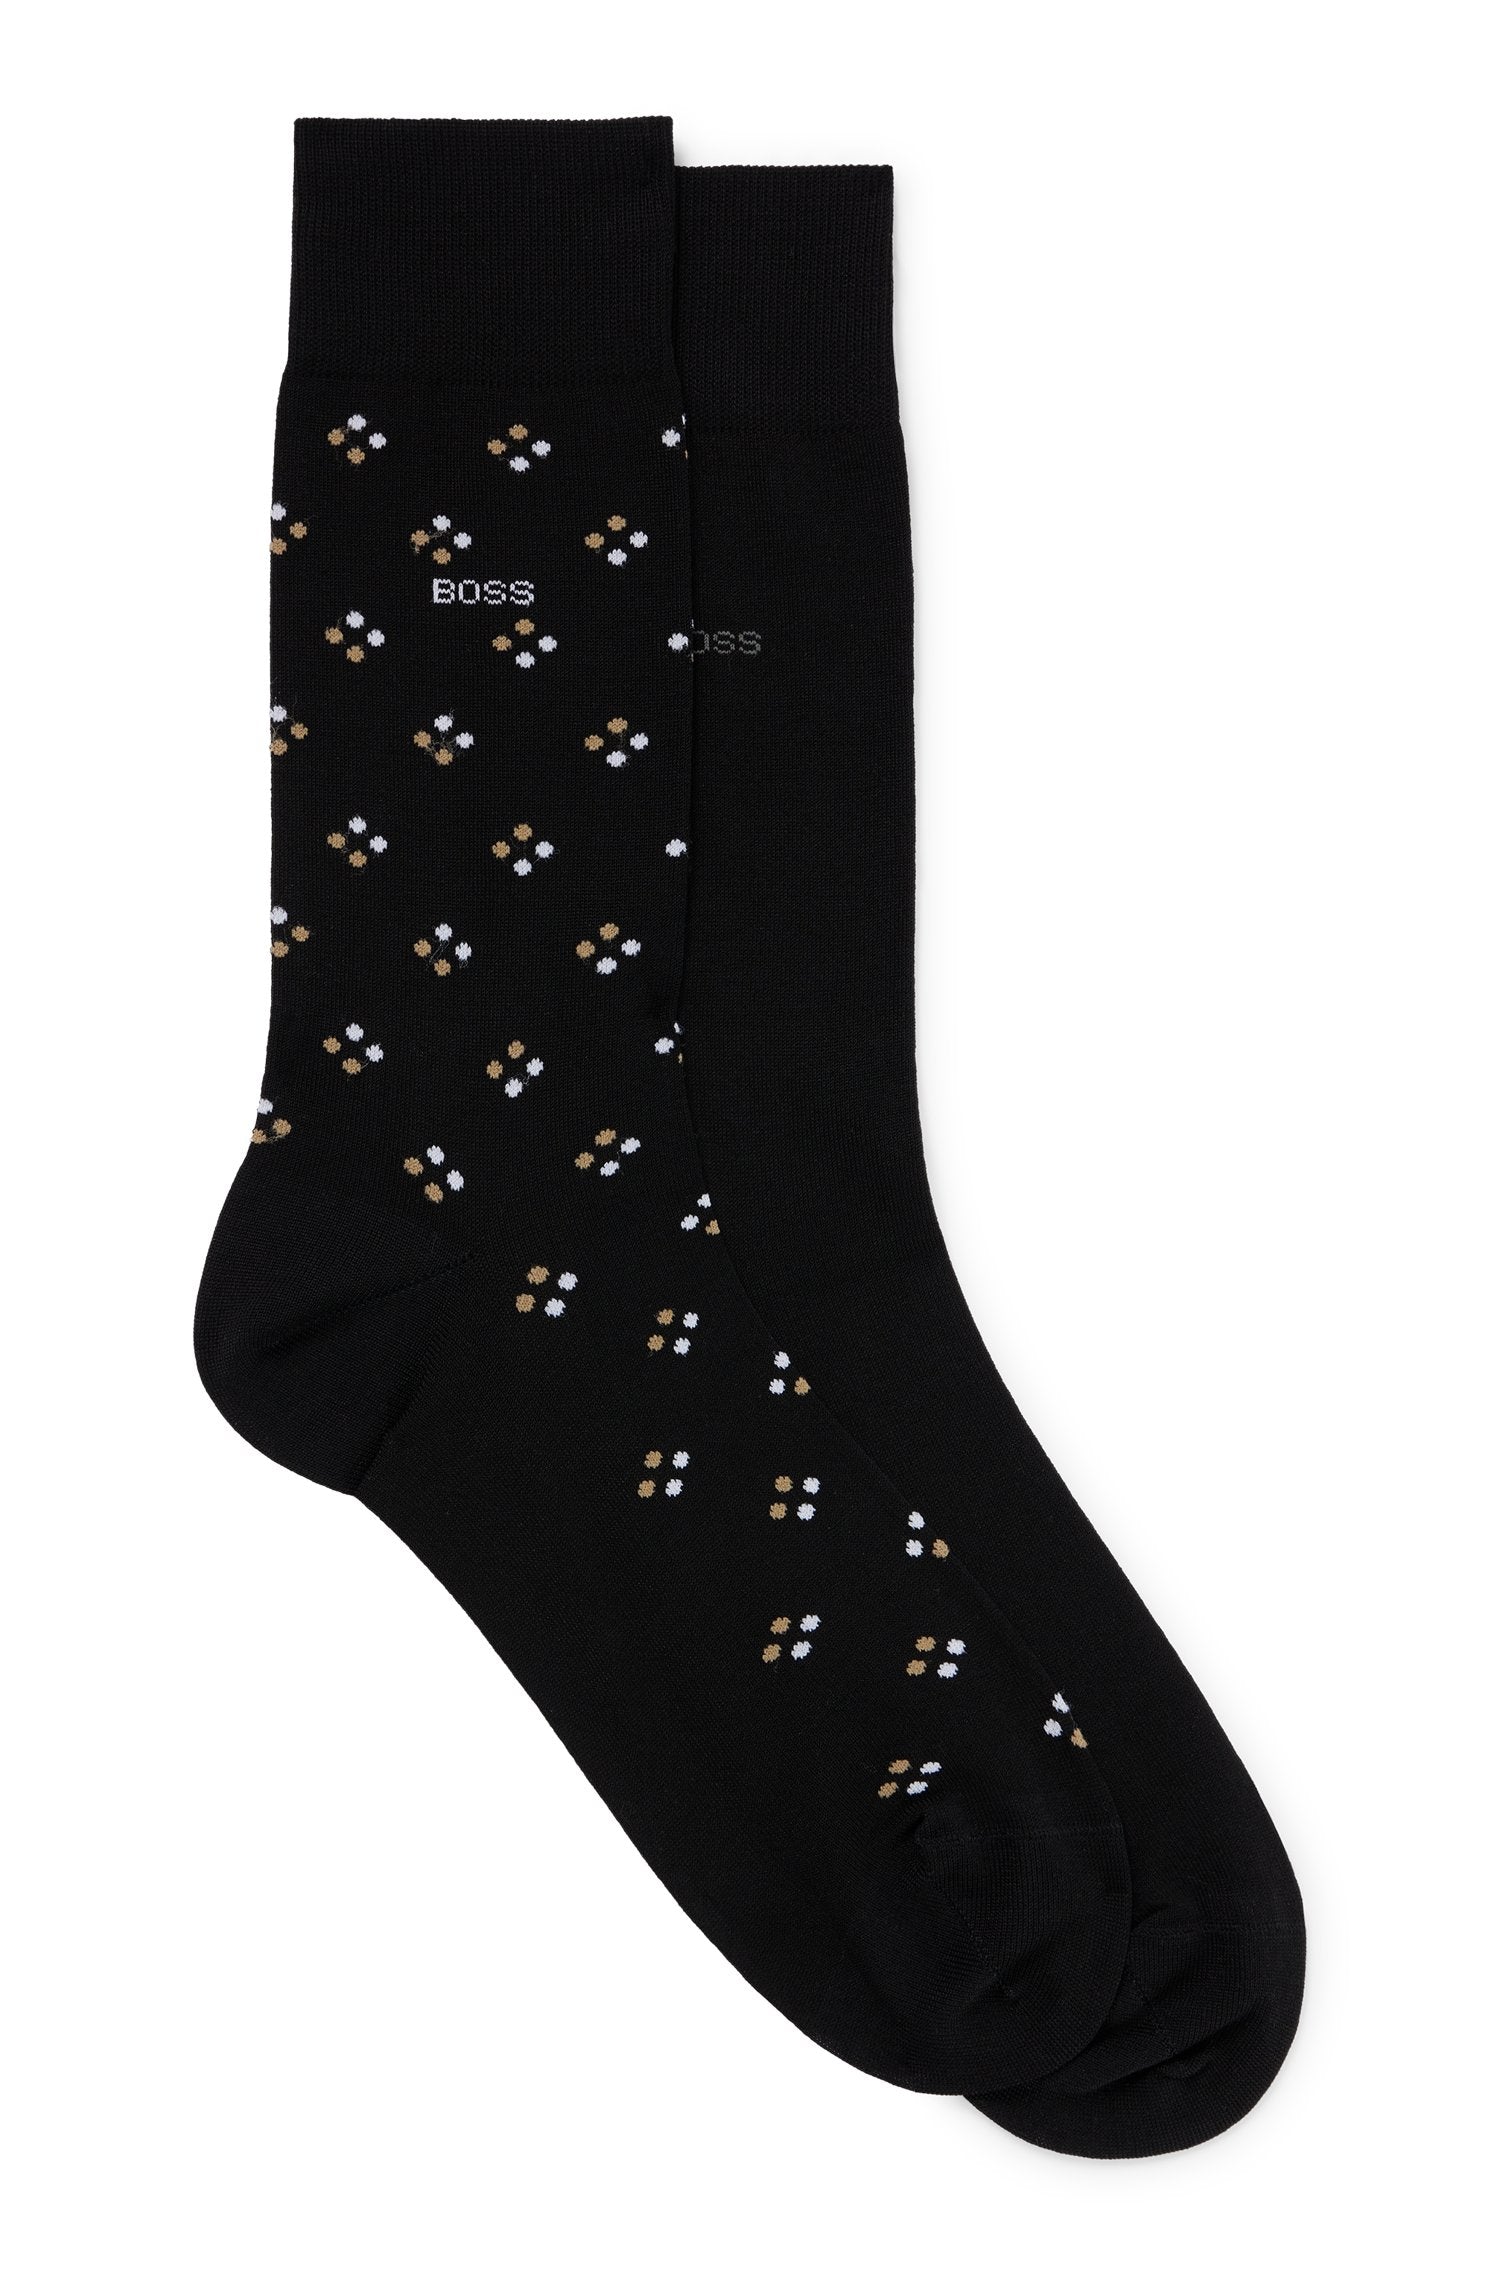 BOSS - 2-Pack of Regular Length Mercerised Cotton Blend Socks in Black